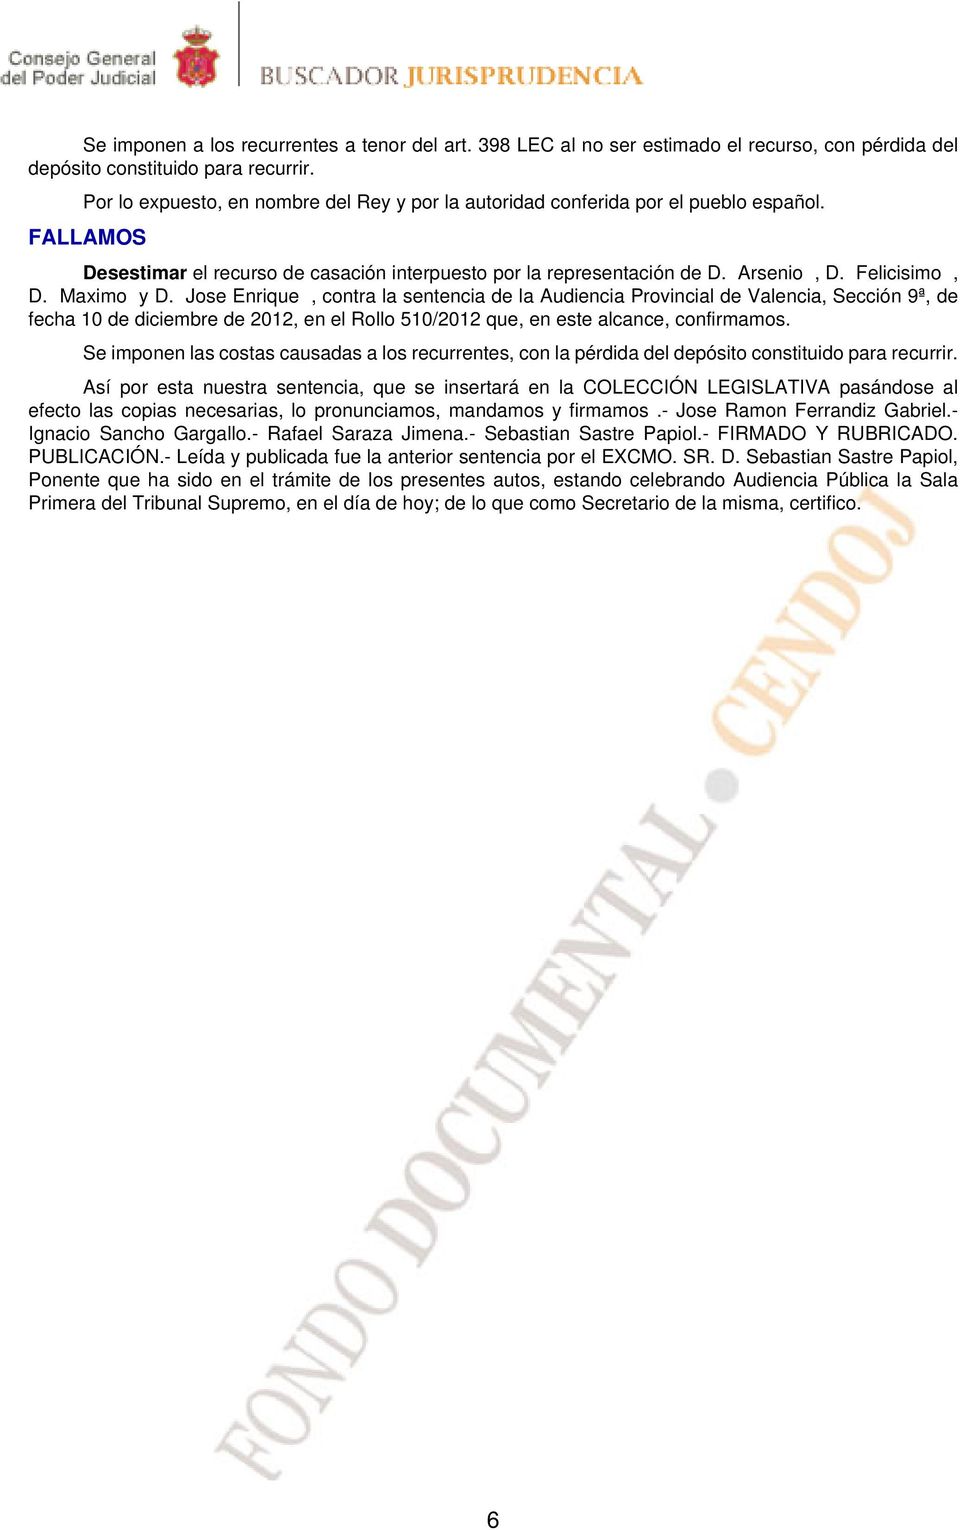 Maximo y D. Jose Enrique, contra la sentencia de la Audiencia Provincial de Valencia, Sección 9ª, de fecha 10 de diciembre de 2012, en el Rollo 510/2012 que, en este alcance, confirmamos.